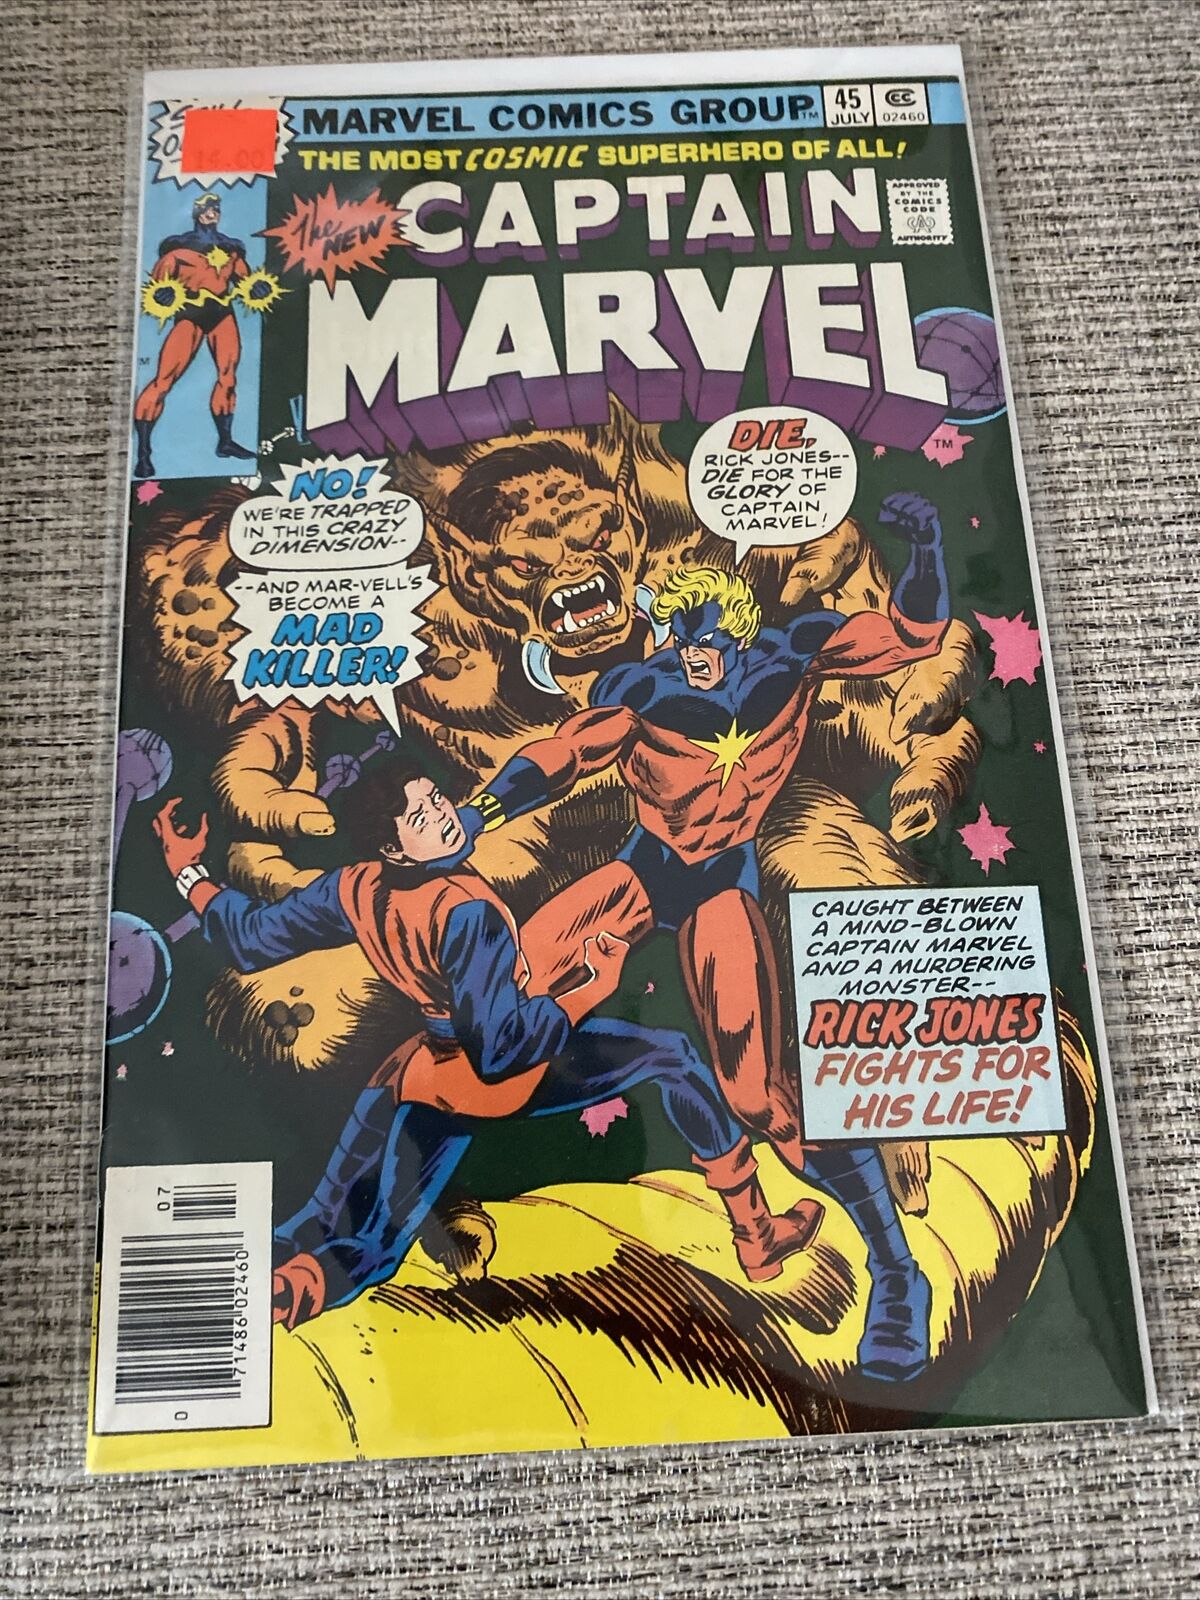 Captain Marvel #45 Marvel 1976